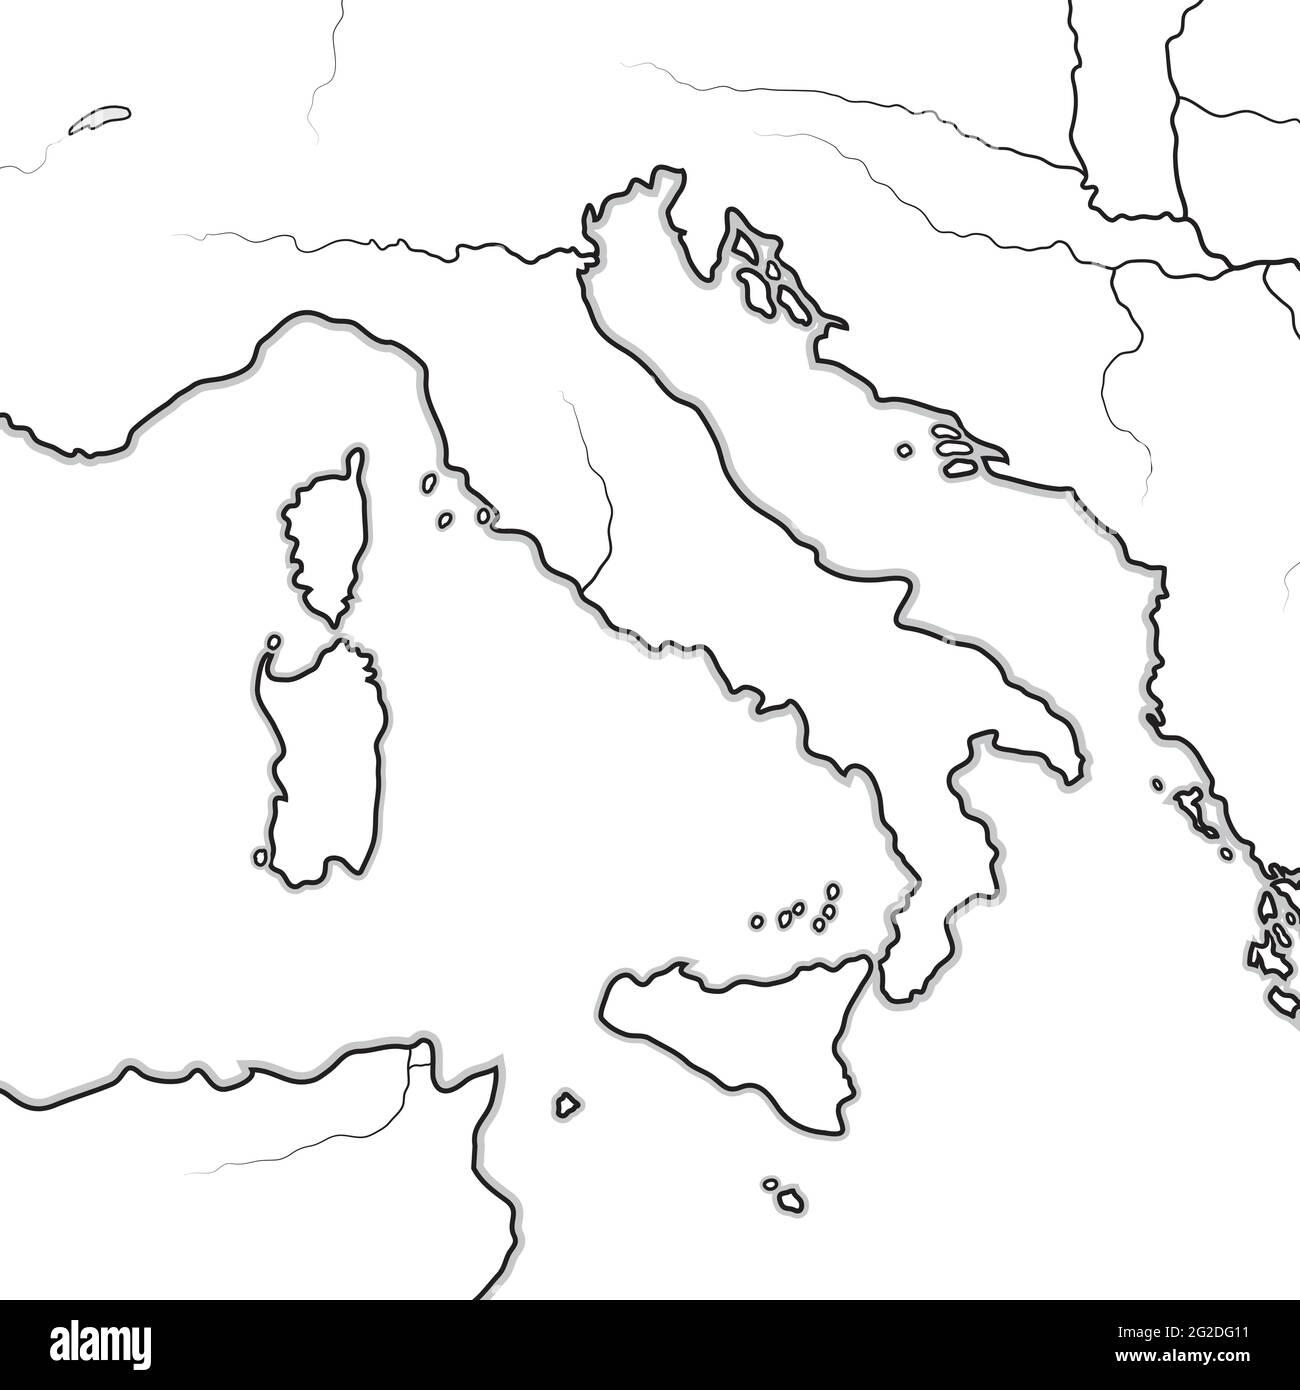 Mappa delle Terre ITALIANE: Italia, Toscana, Lombardia, Sicilia, Appennino, Penisola Italiana. Grafico geografico. Illustrazione Vettoriale